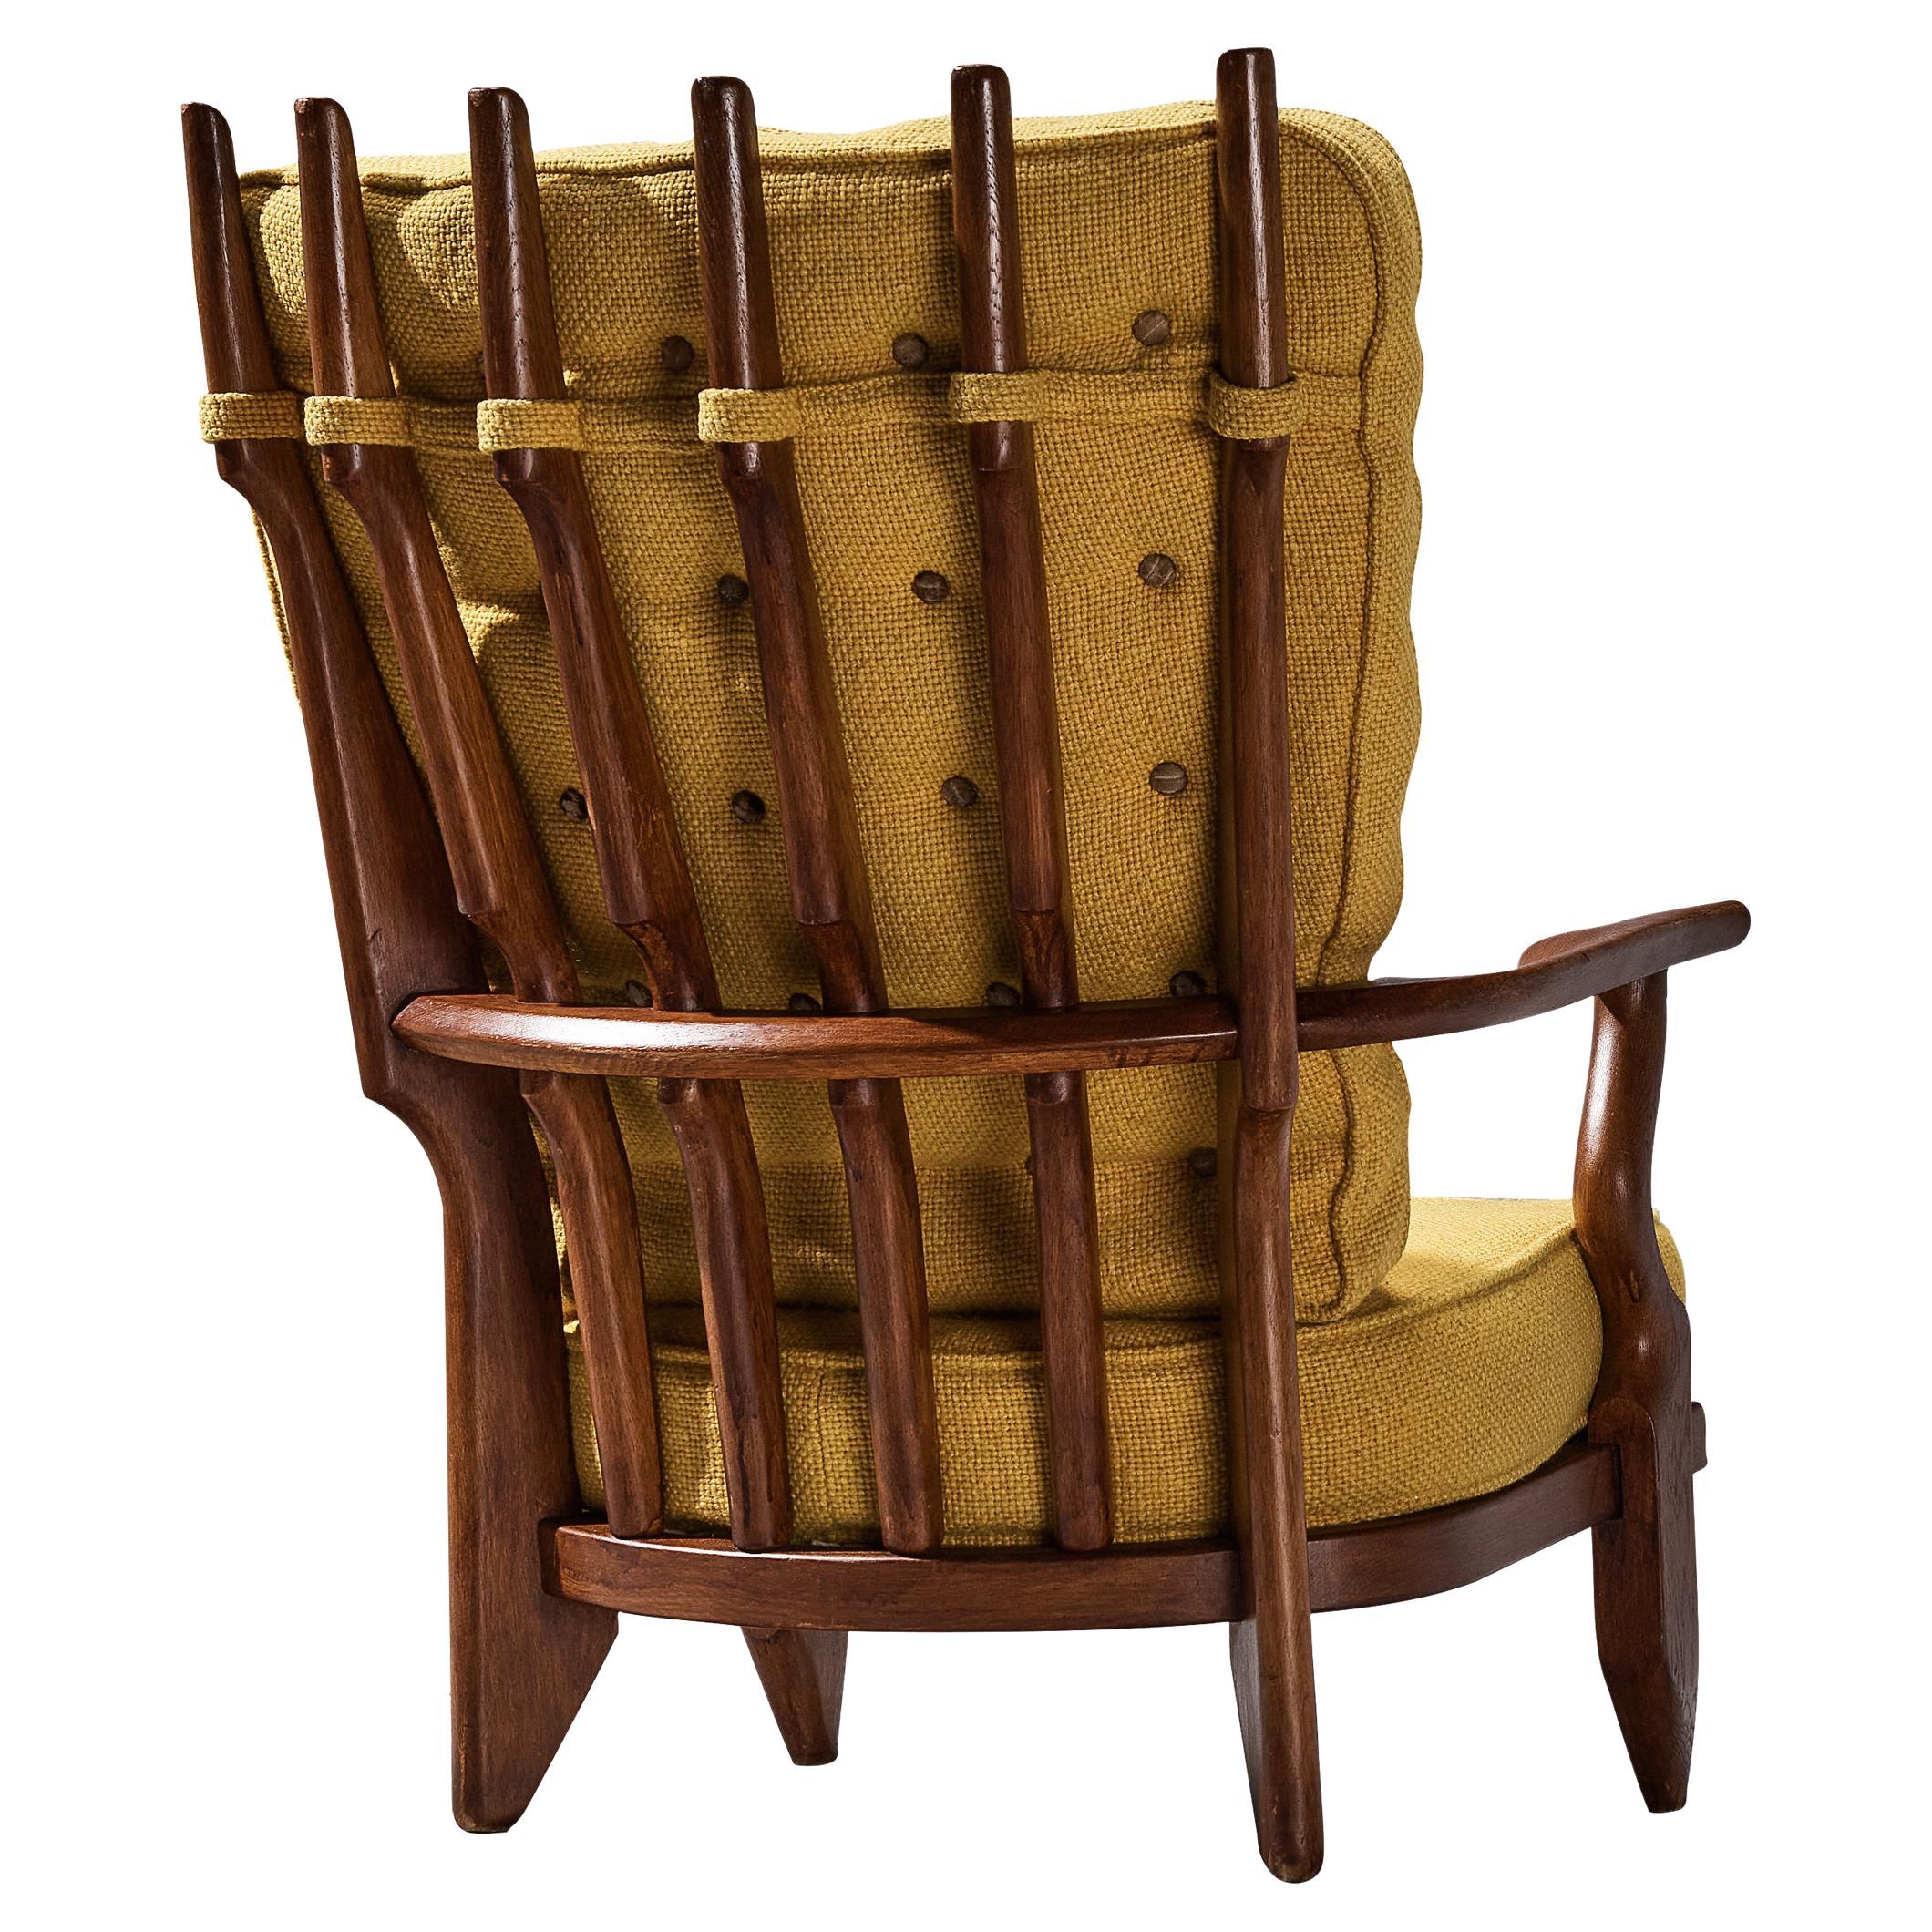 Chaise longue 'Grand Repos' de Guillerme & Chambron en chêne 